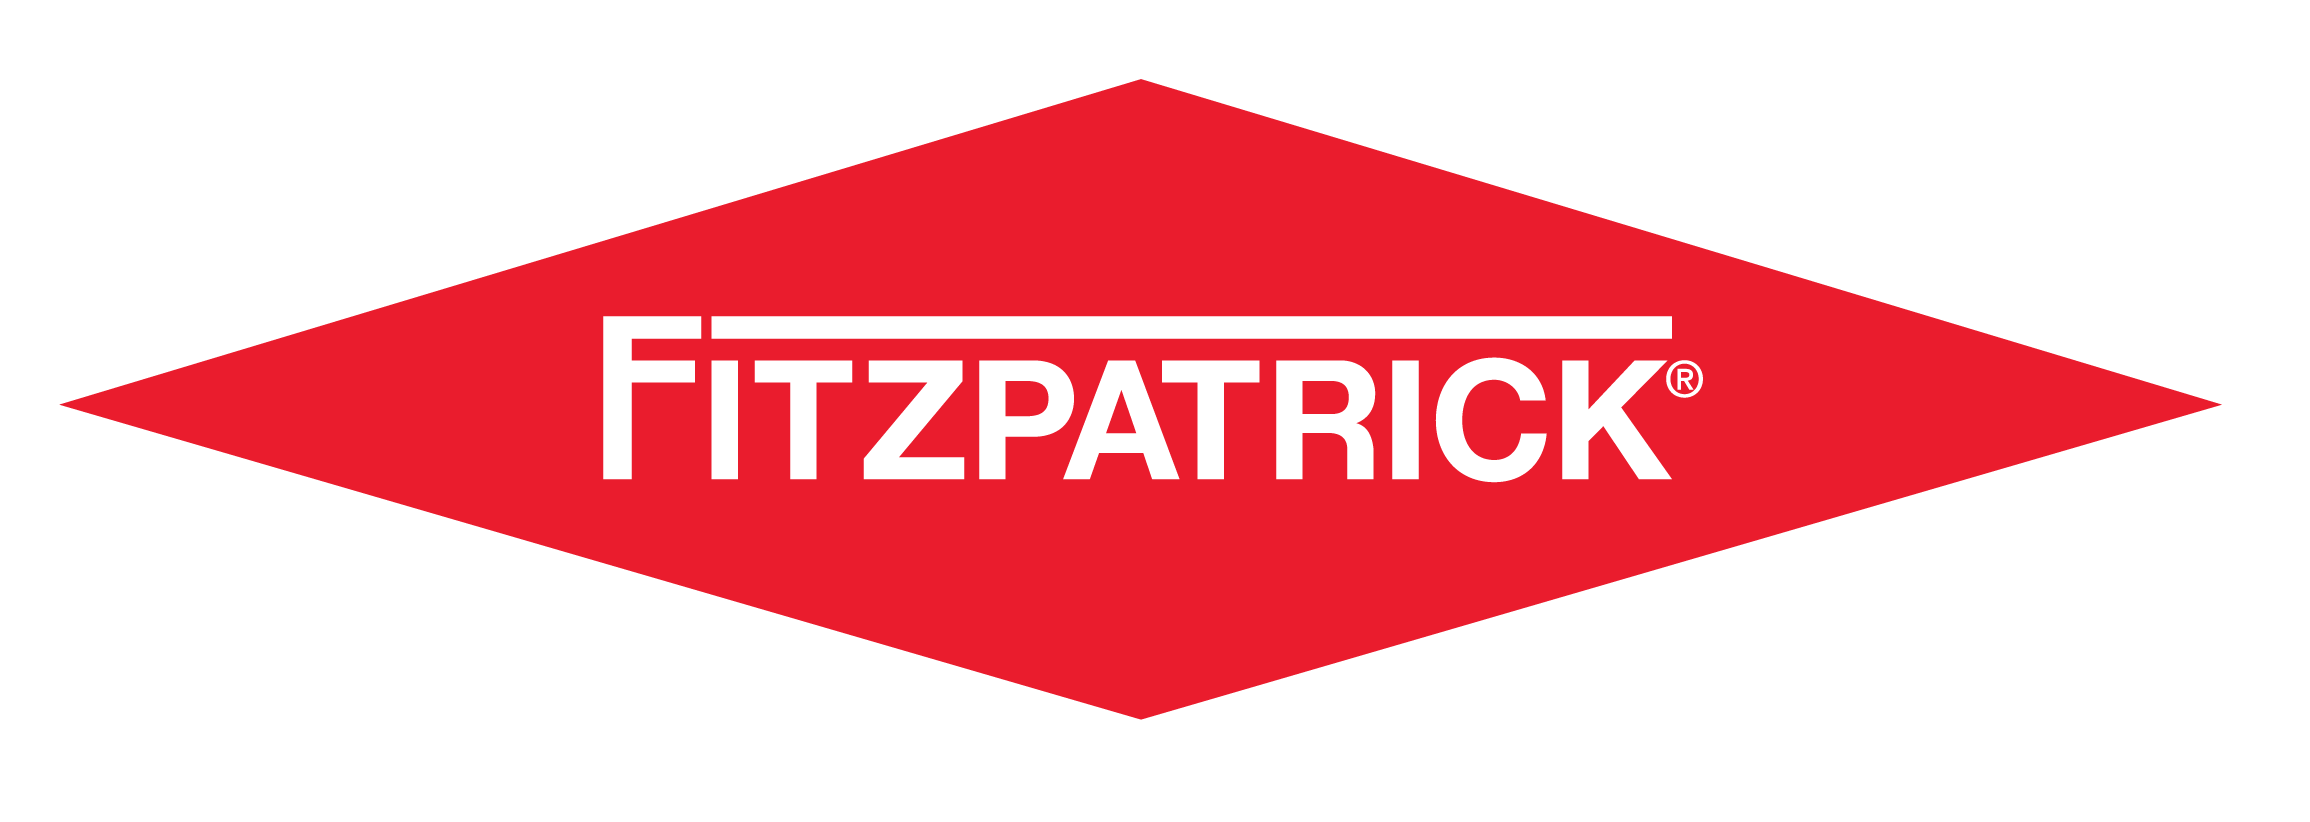 The Fitzpatrick Company logo